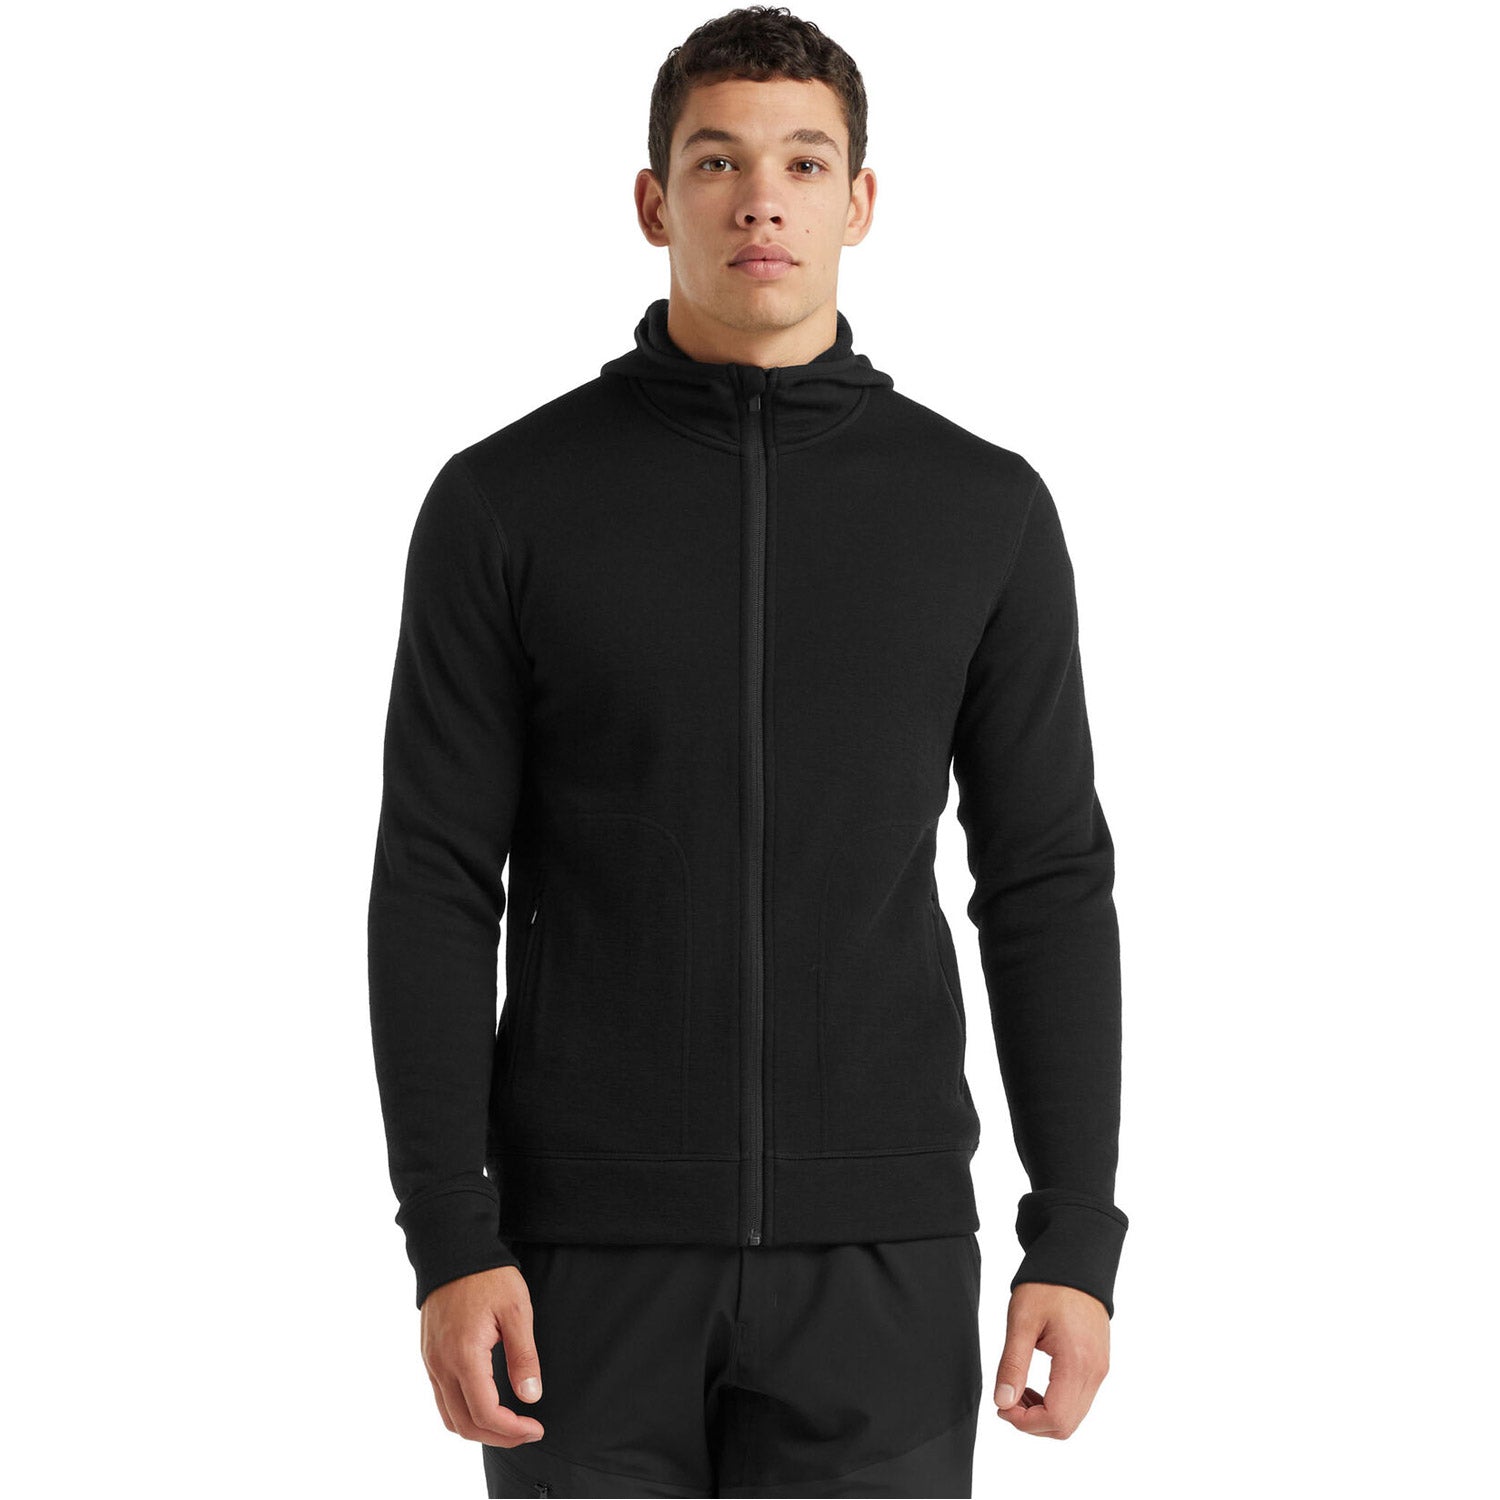 Men's RealFleece Merino Elemental Long Sleeve Zip Hood Jacket